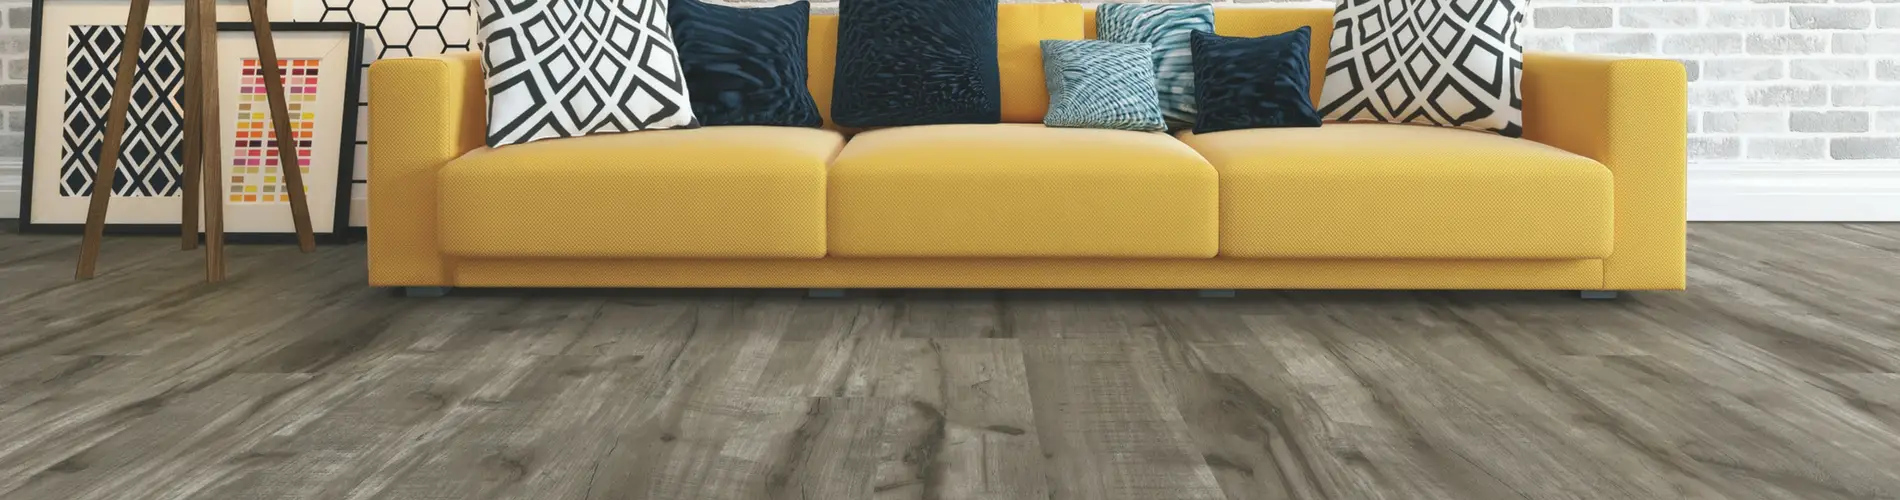 luxury vinyl flooring with yellow sofa